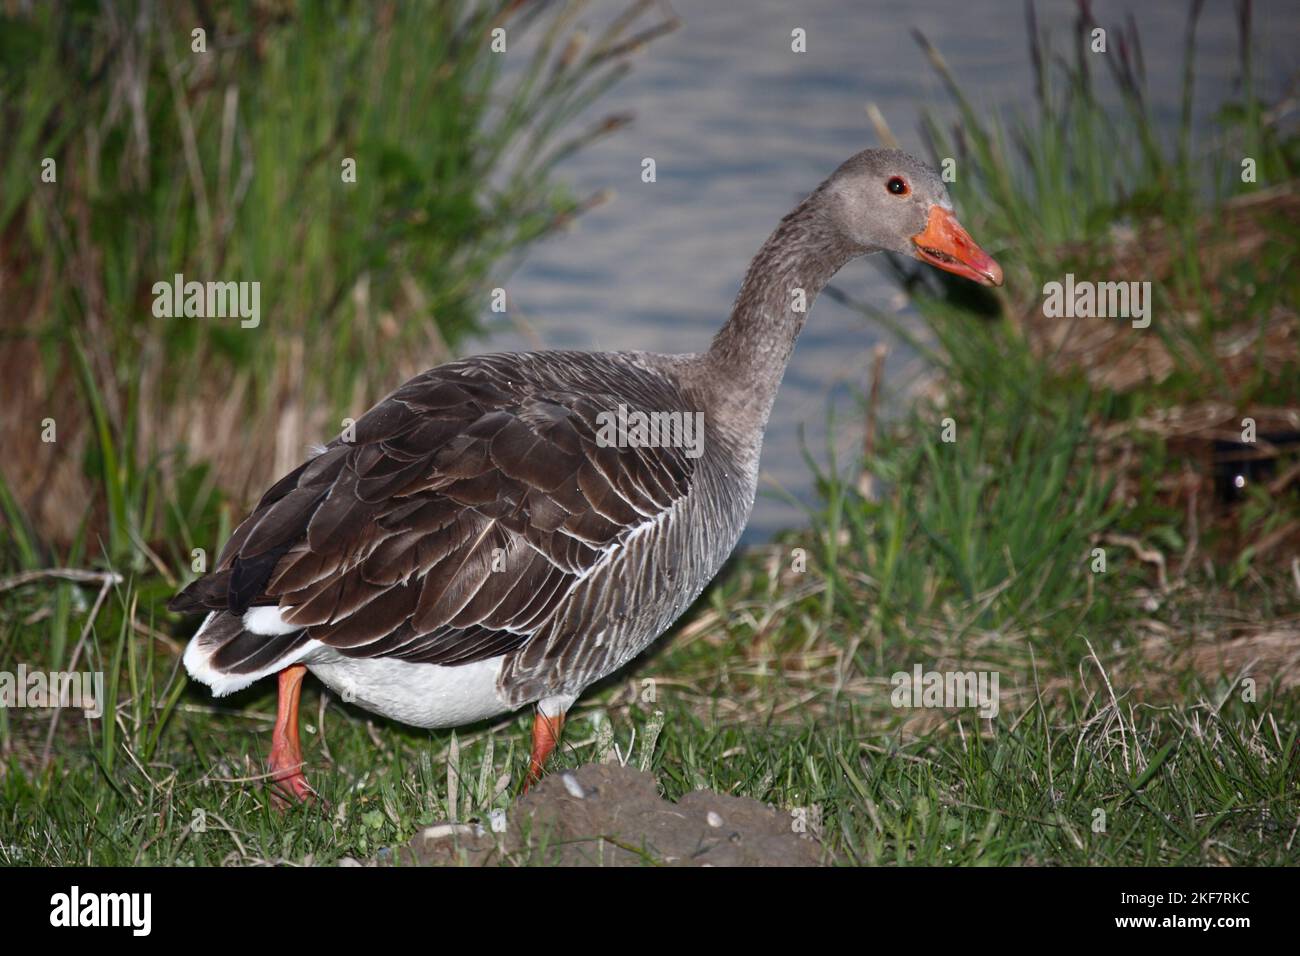 Graugans / Greylag goose / Anser anser Stock Photo